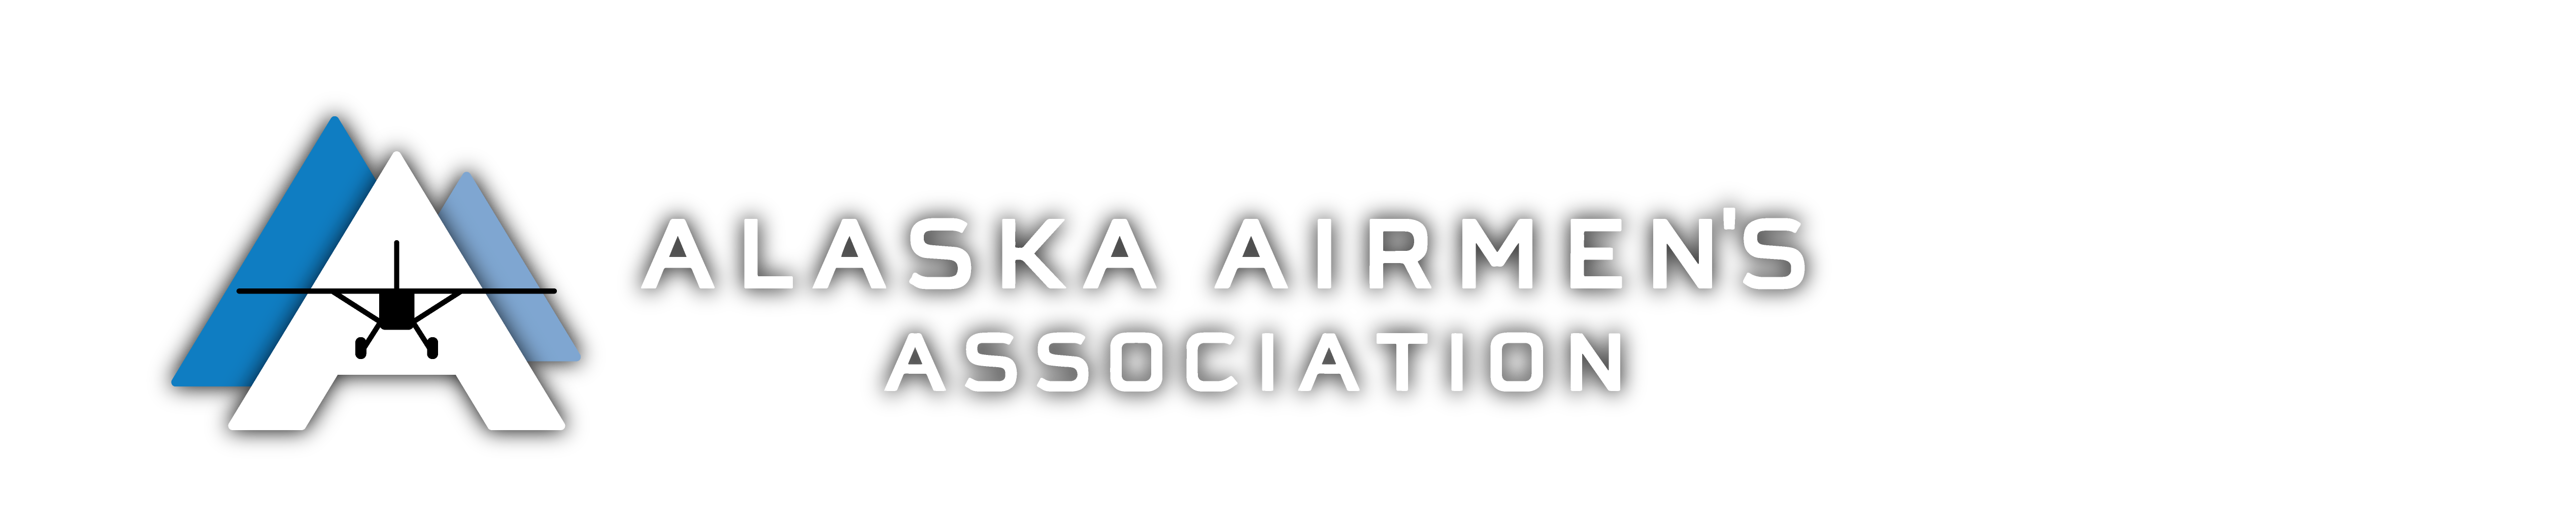 The Alaska Airmen's Association